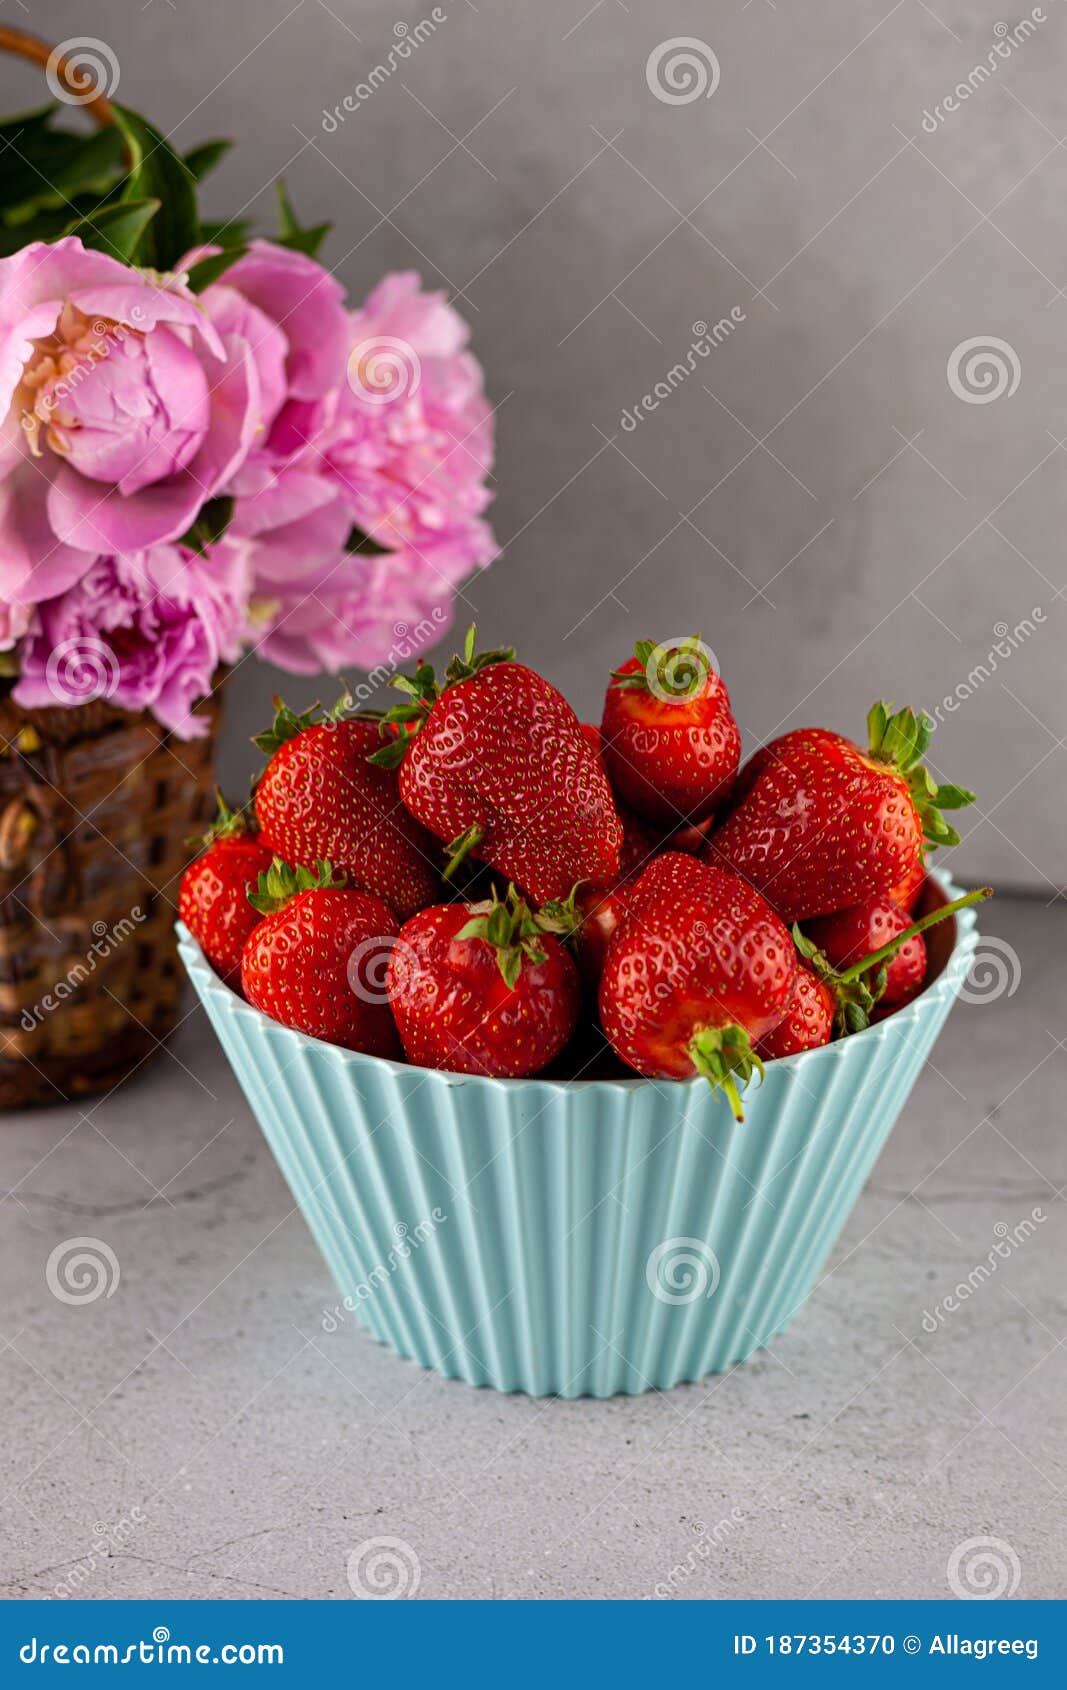 壁纸 : 草莓, 浆果, 盘子, 收成 4928x3264 - wallpaperUp - 1183647 - 电脑桌面壁纸 ...